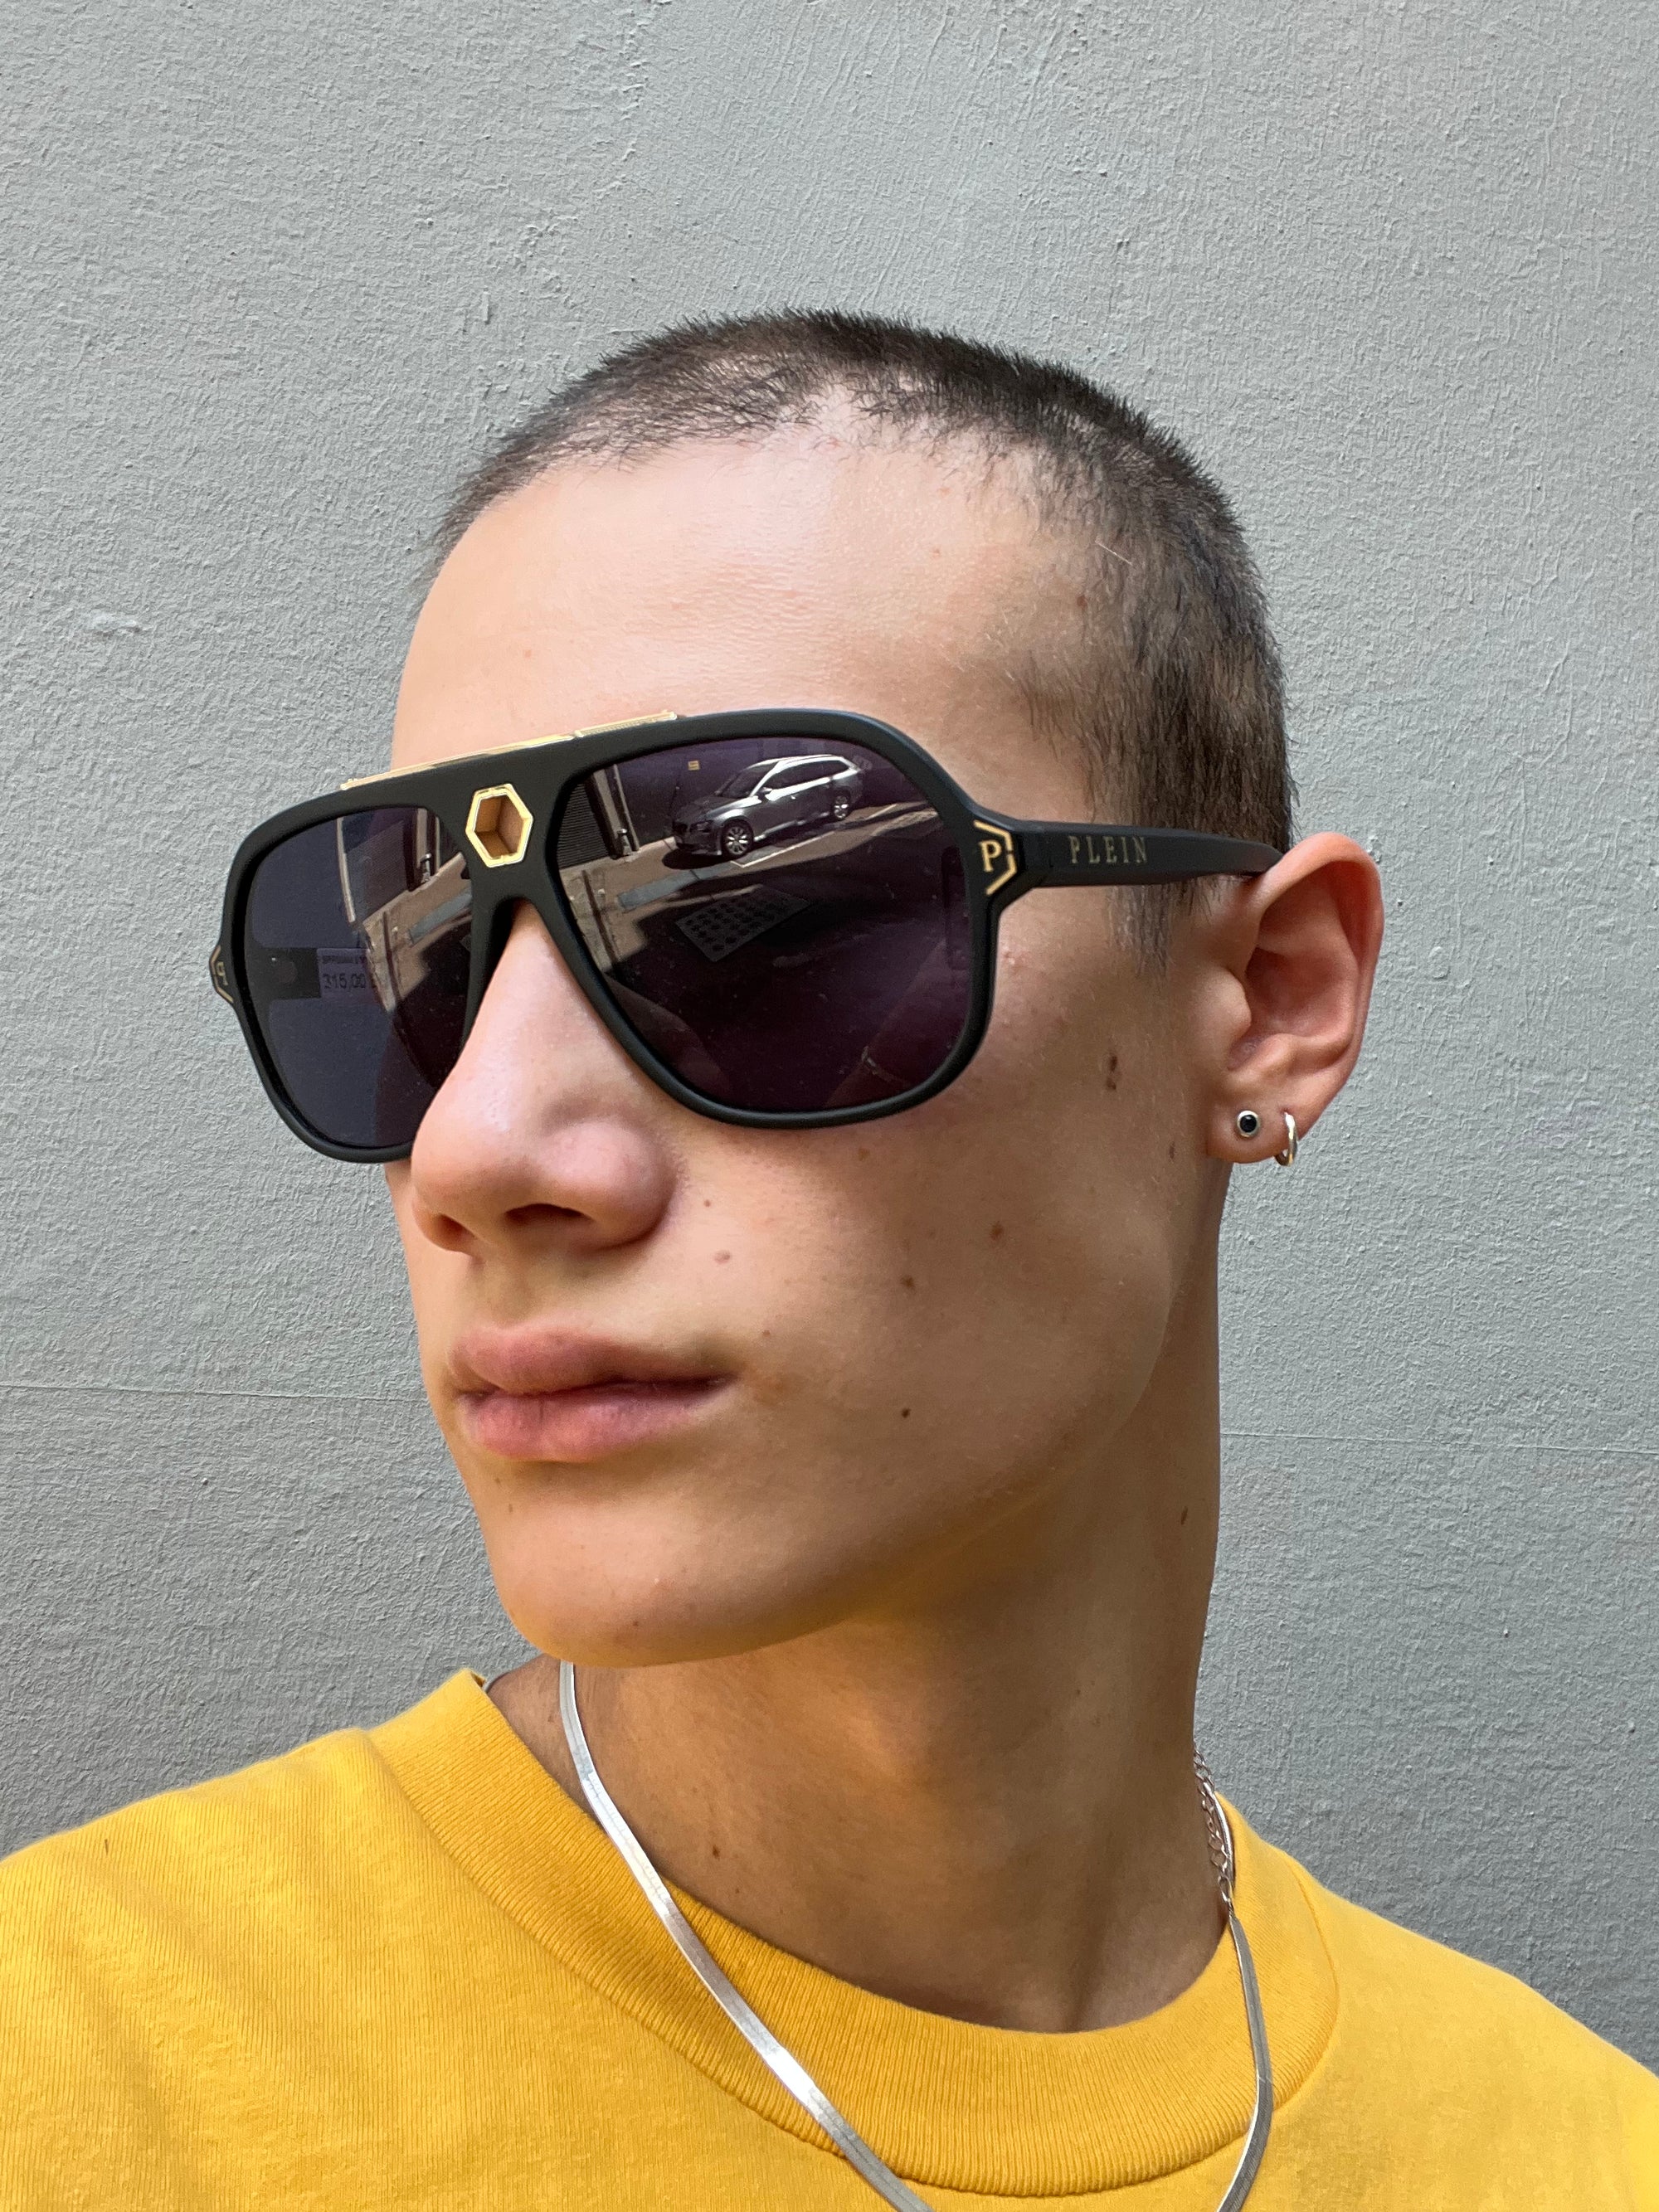 Zu sehen ist ein Tragebild von Philipp Plein Sunglasses von vorne vor einem grauen Hintergurnd.